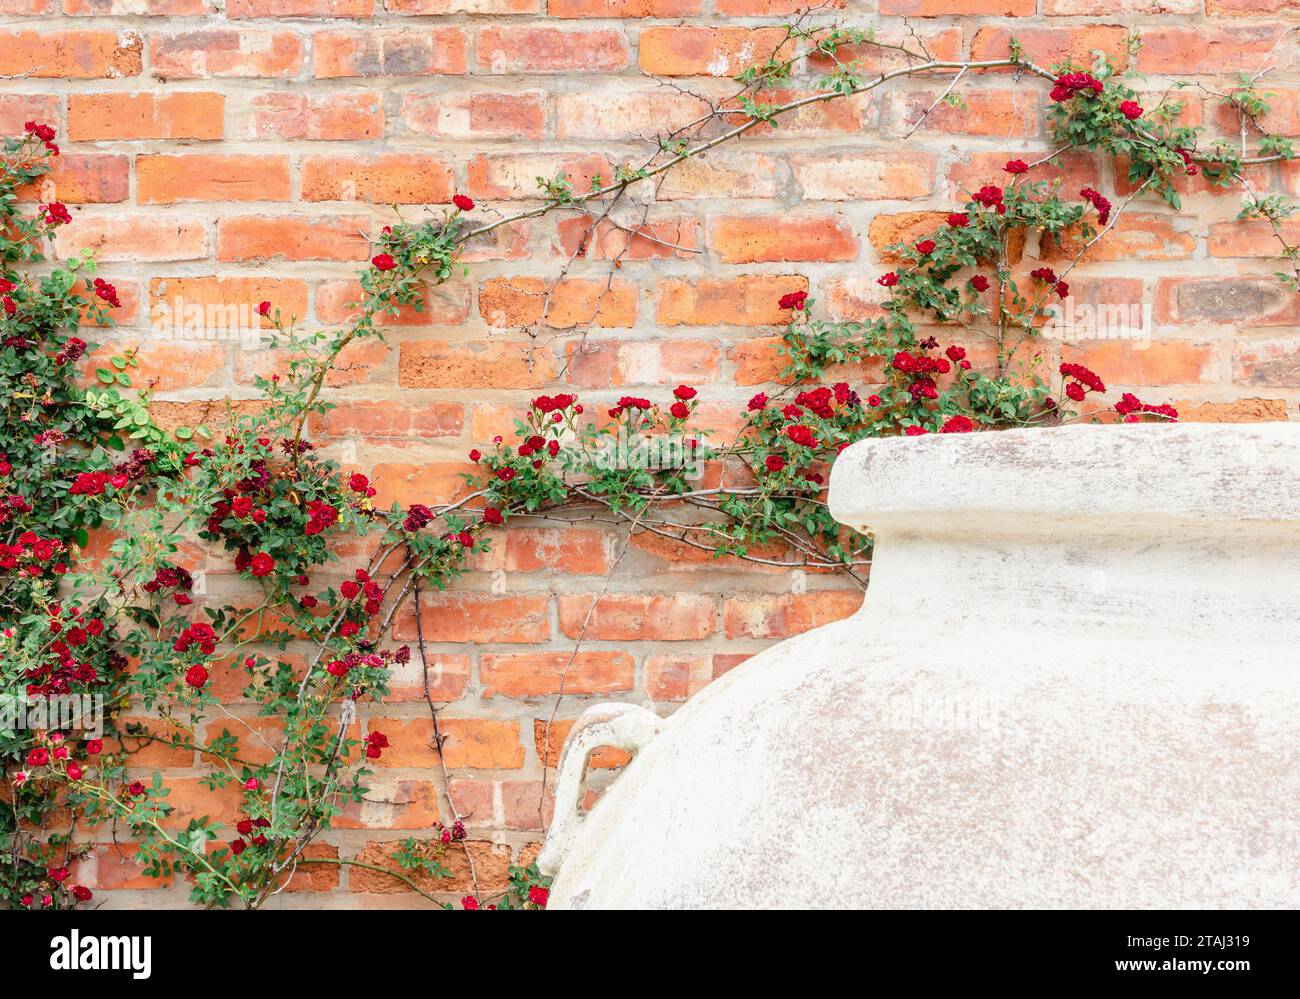 Rote Rosenminiatur-Kletterpflanze vor roter Ziegelwand mit weißem Pflanztopf Stockfoto